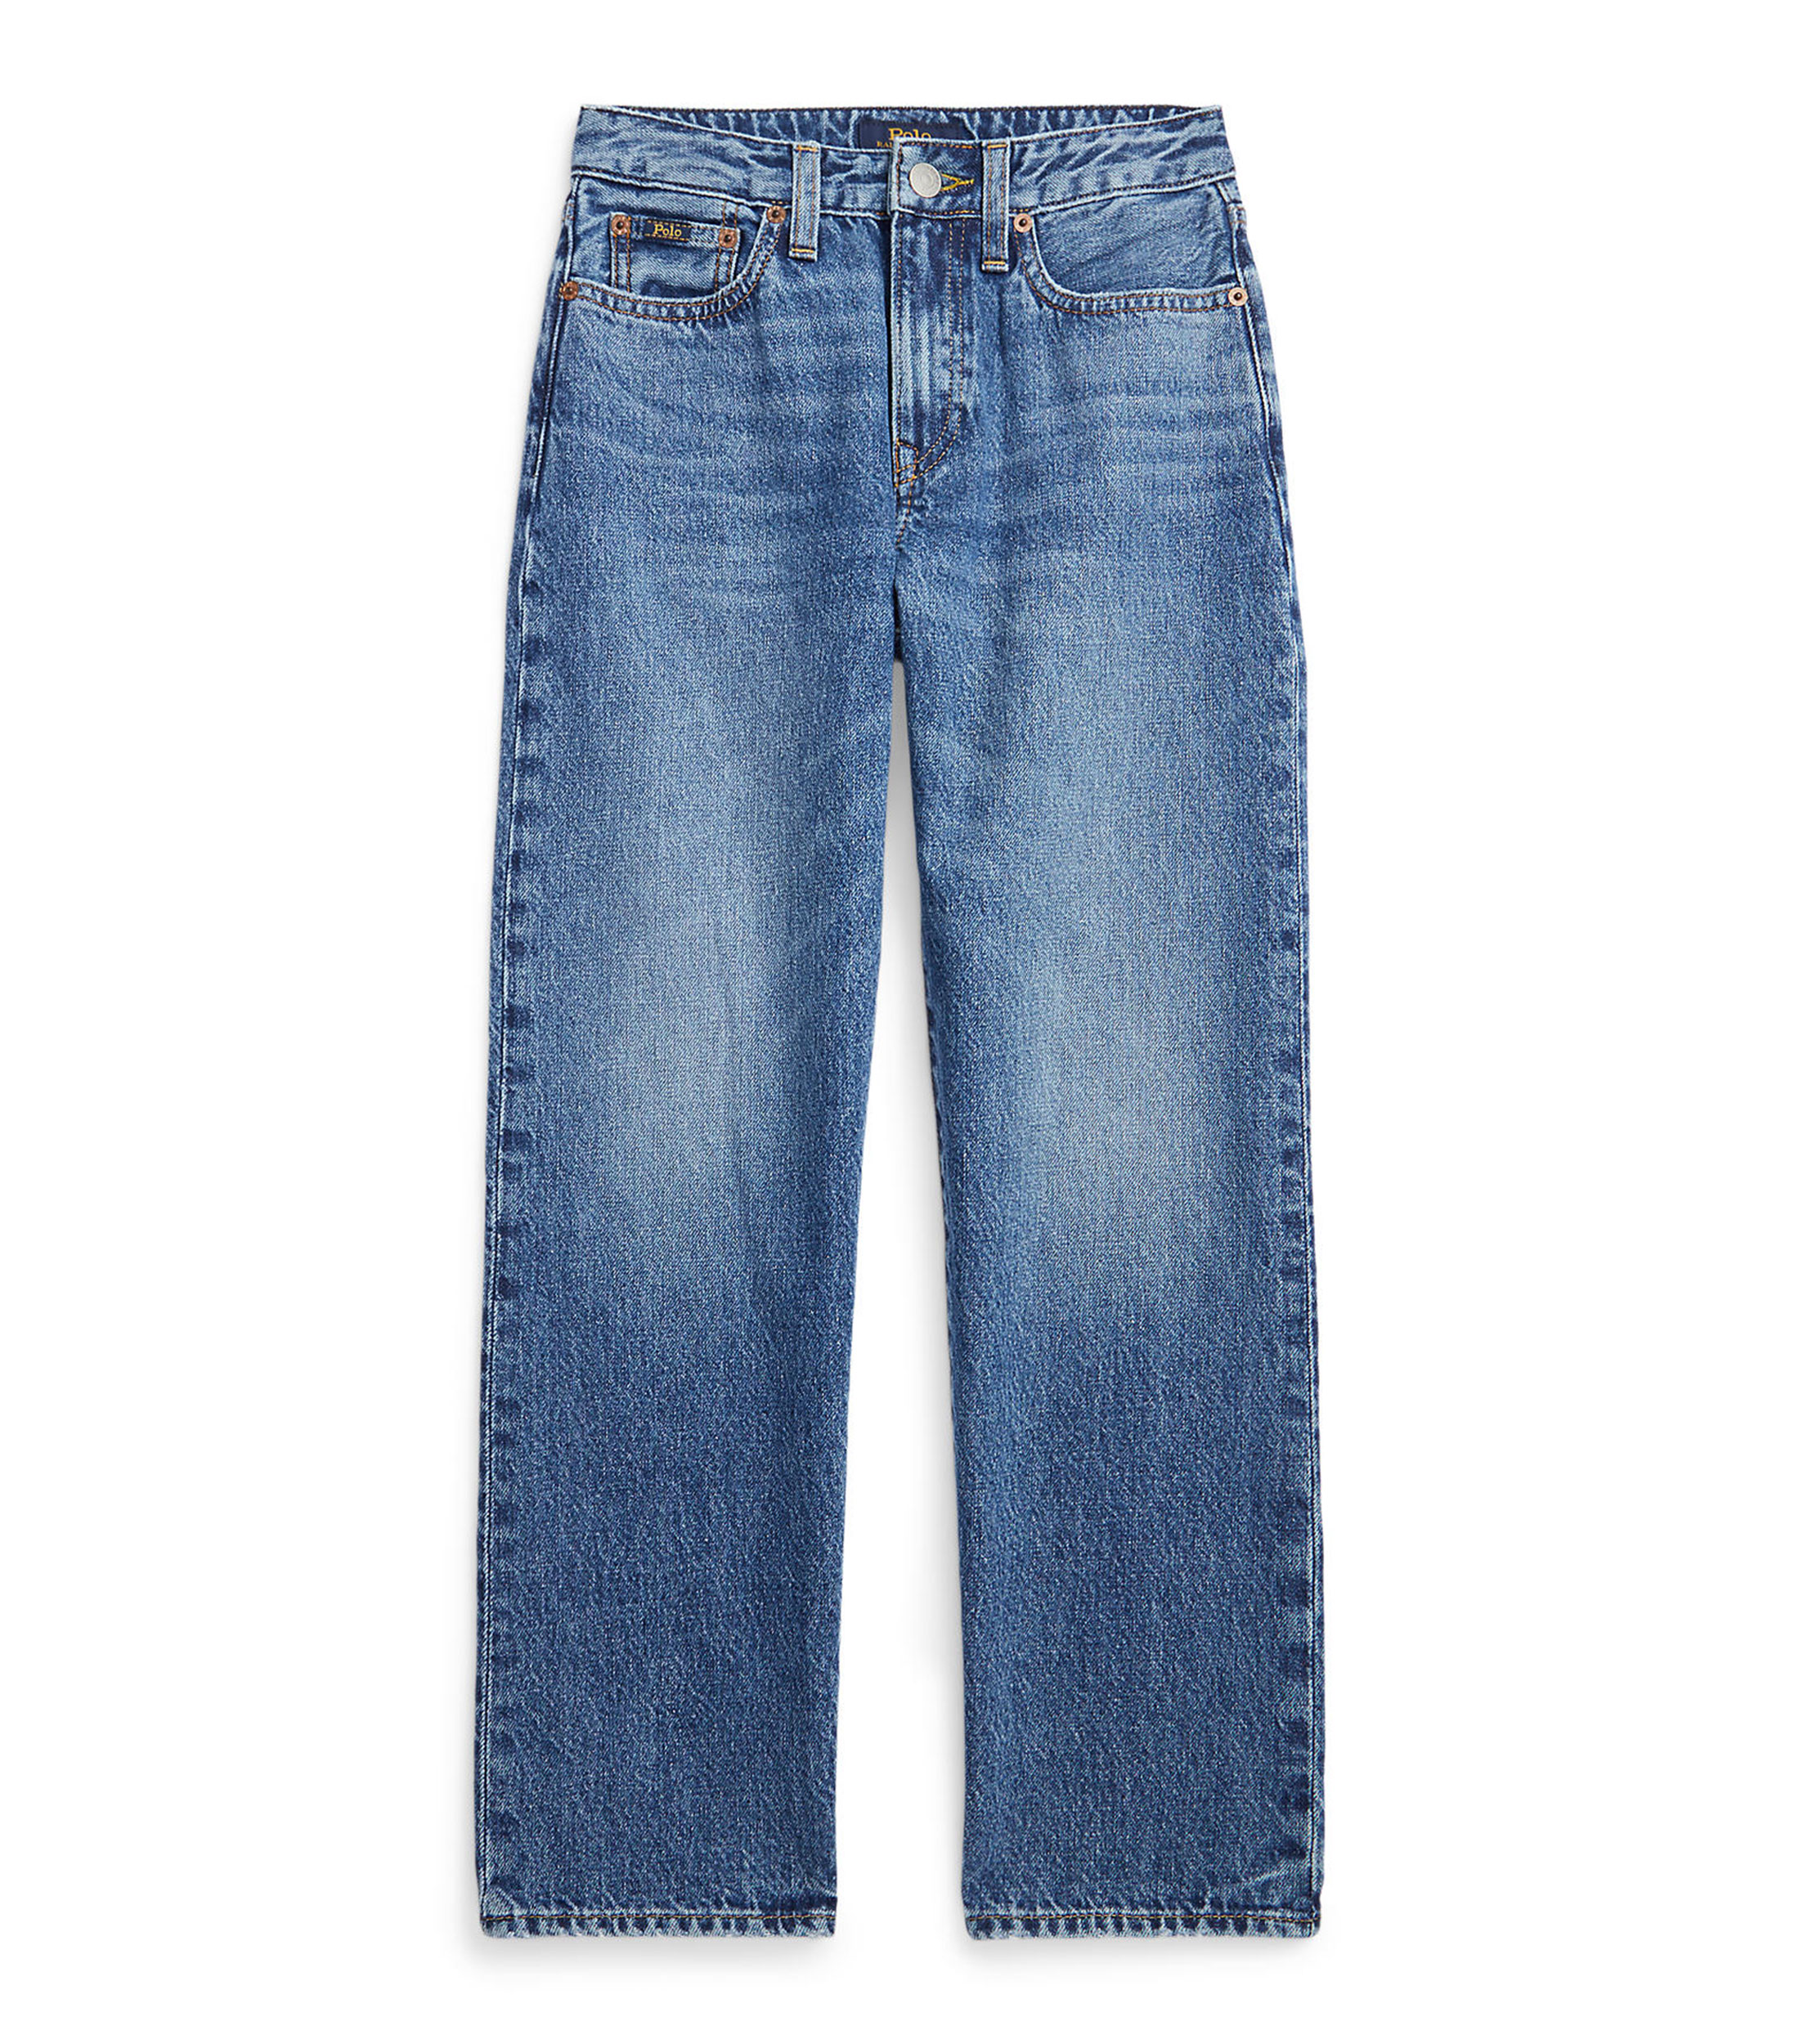 Jeans & Pantalones de Mezclilla para Mujer - El Palacio de Hierro